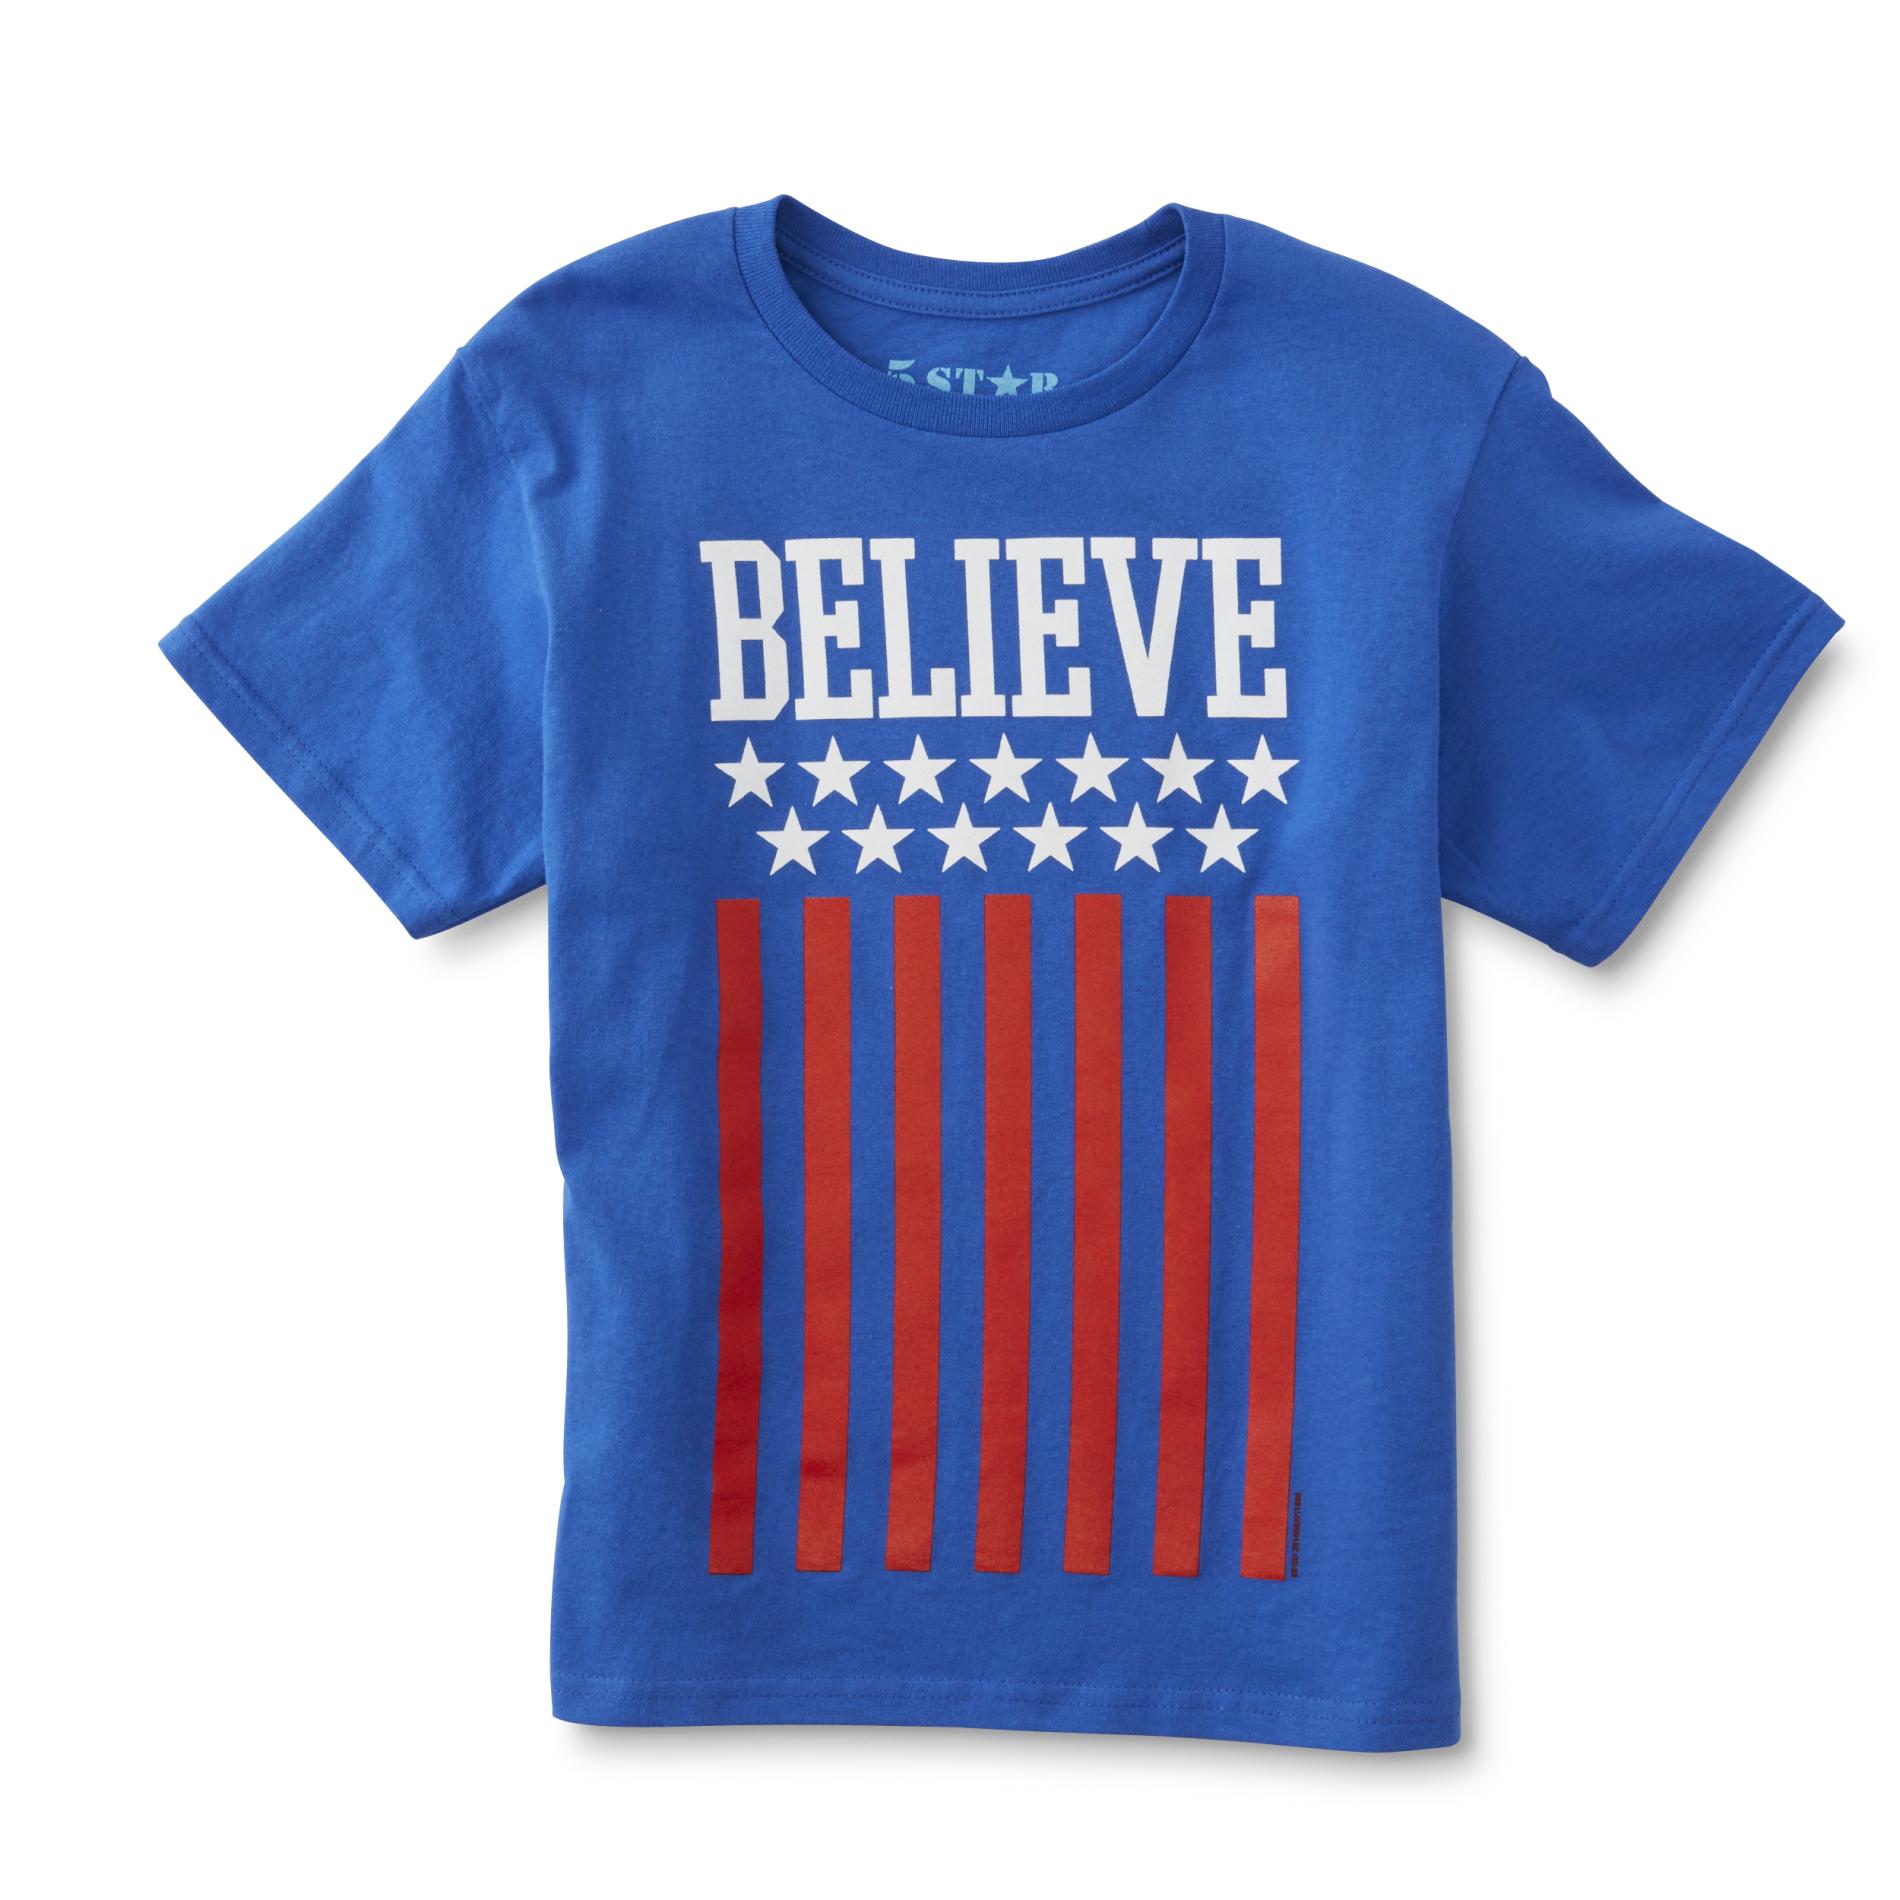 5Star Boy's Graphic T-Shirt - Believe